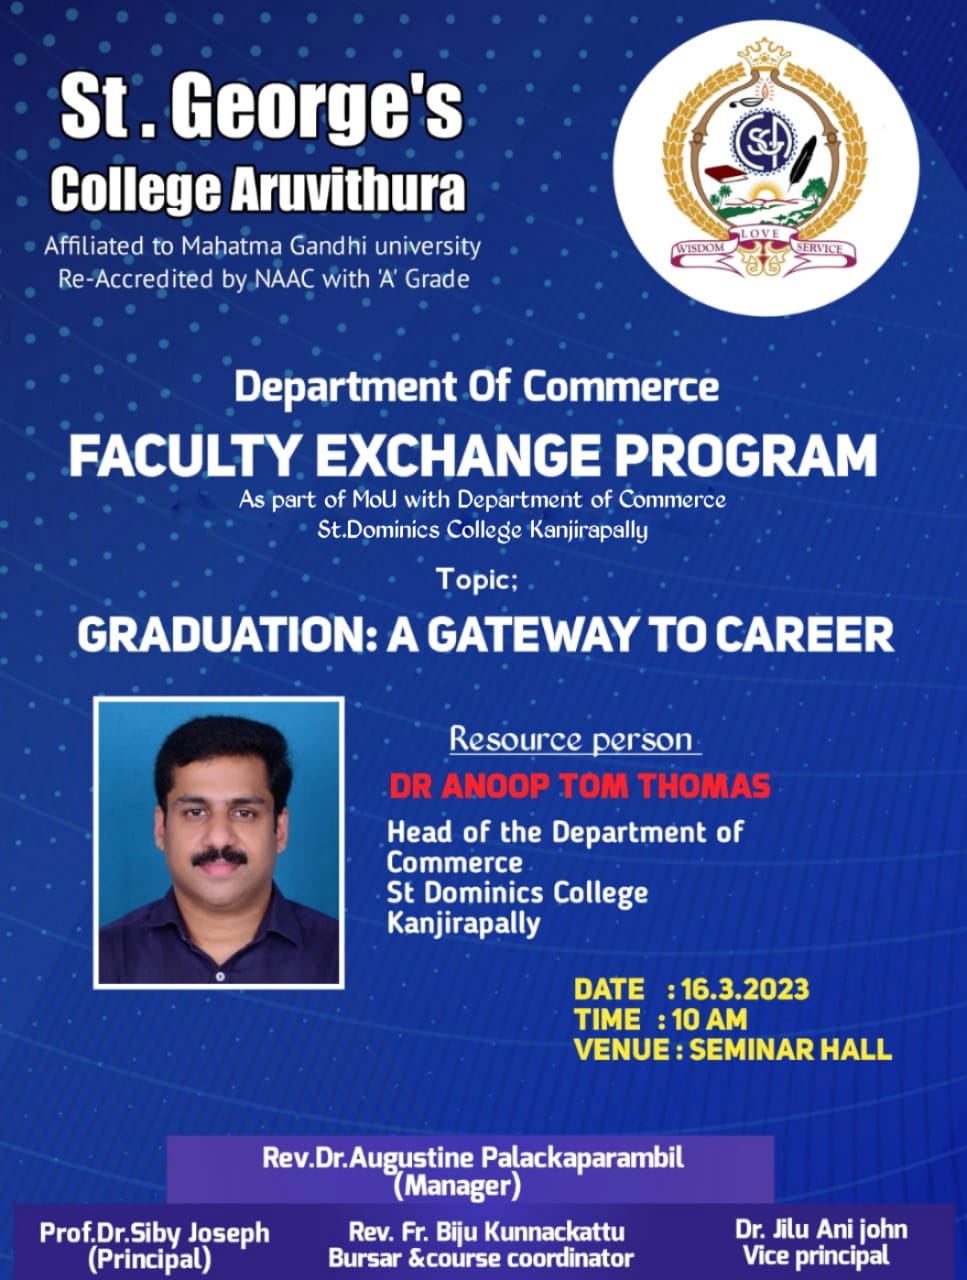 Department of Commerce Faculty Exchange program